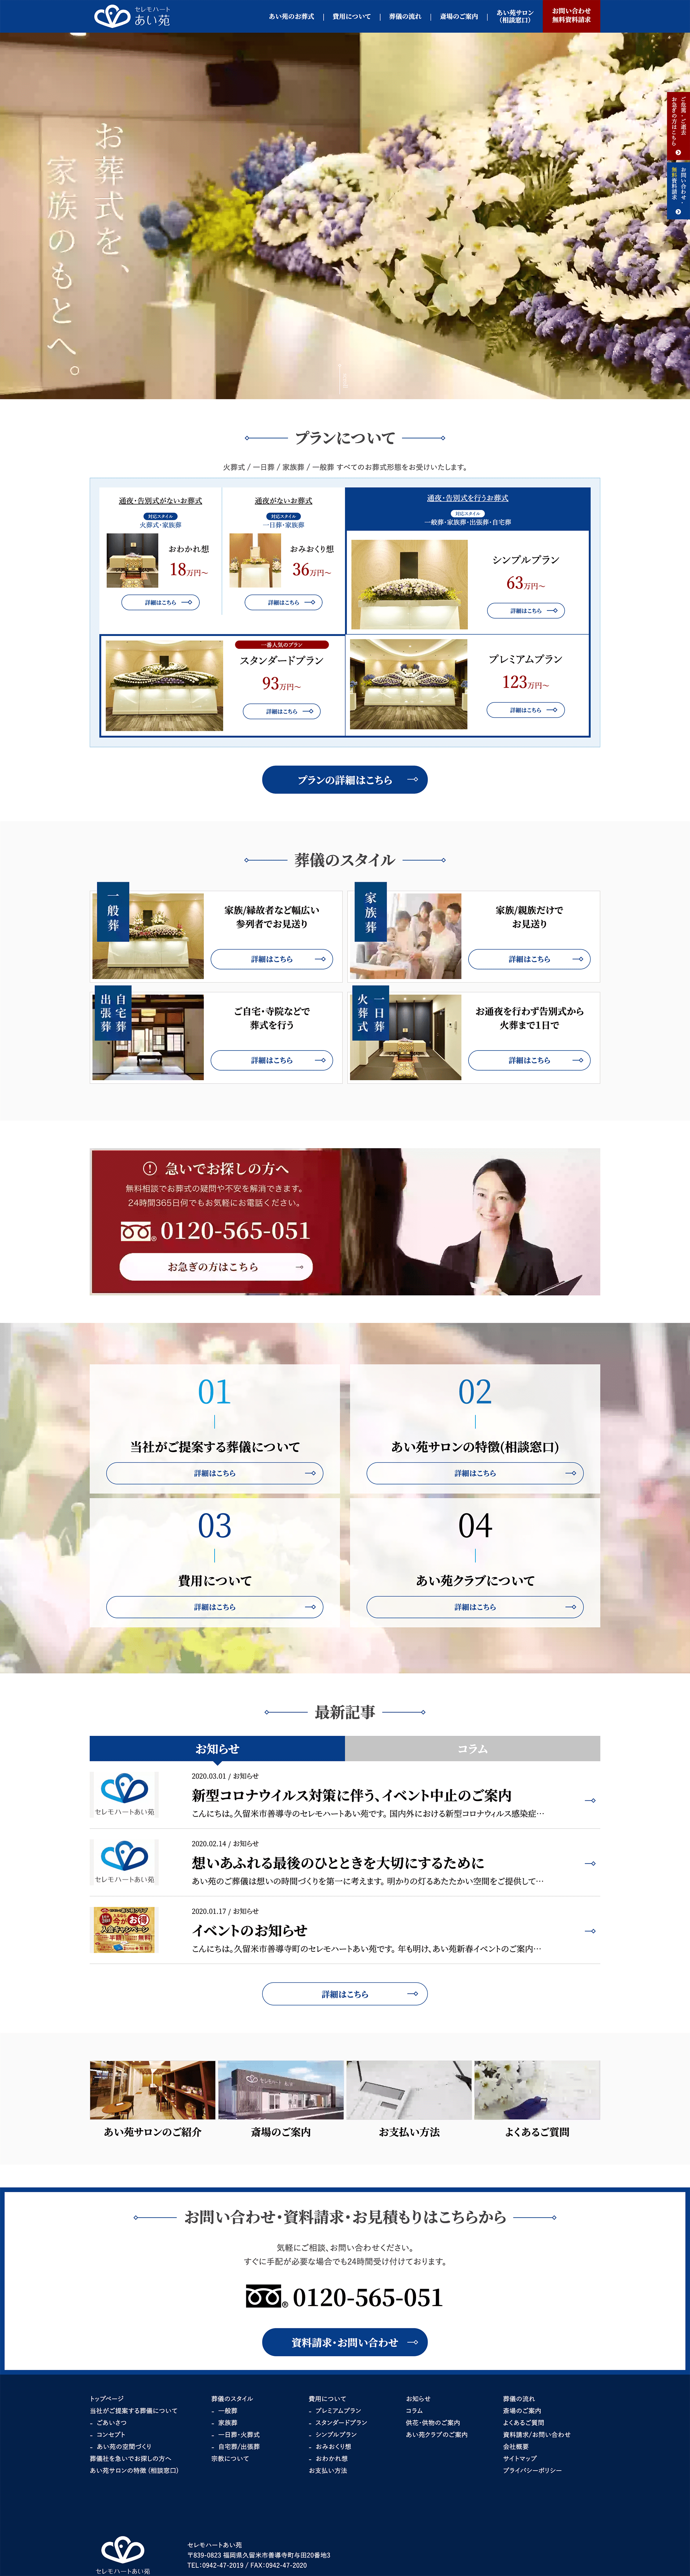 株式会社藍苑様 ホームページ desktop image